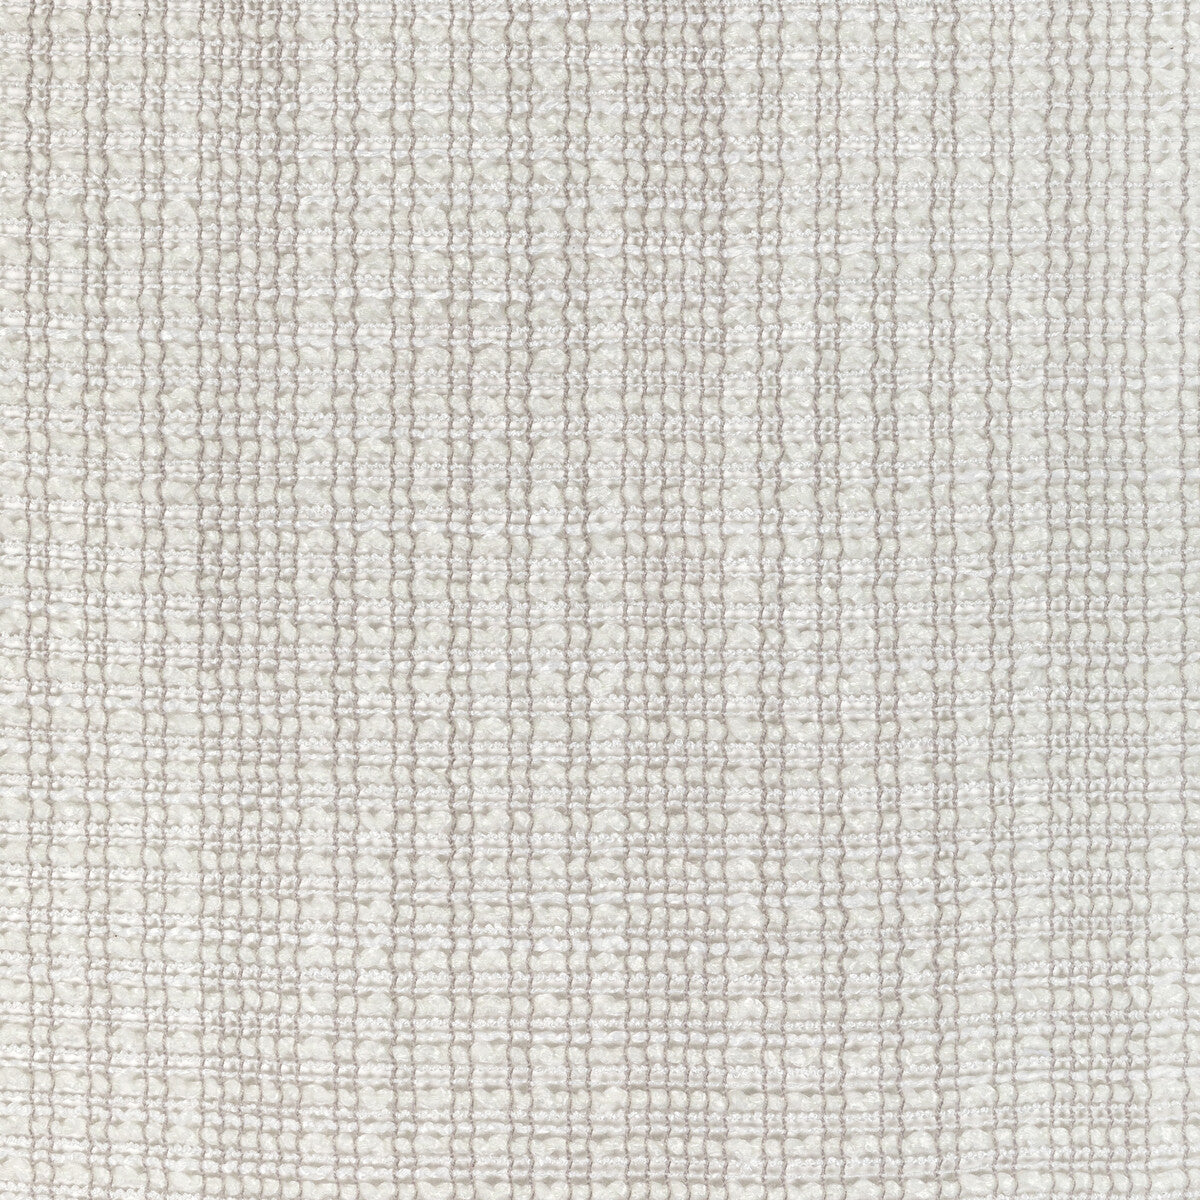 Kravet Basics fabric in 4943-1101 color - pattern 4943.1101.0 - by Kravet Basics